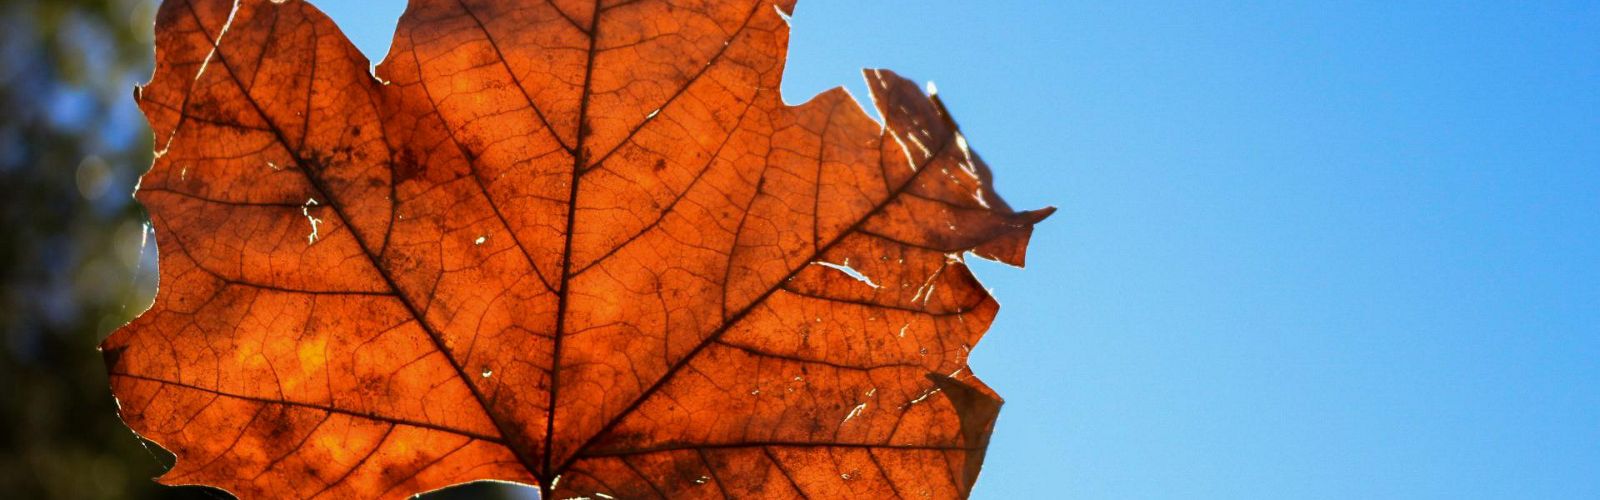 Rustic maple leaf